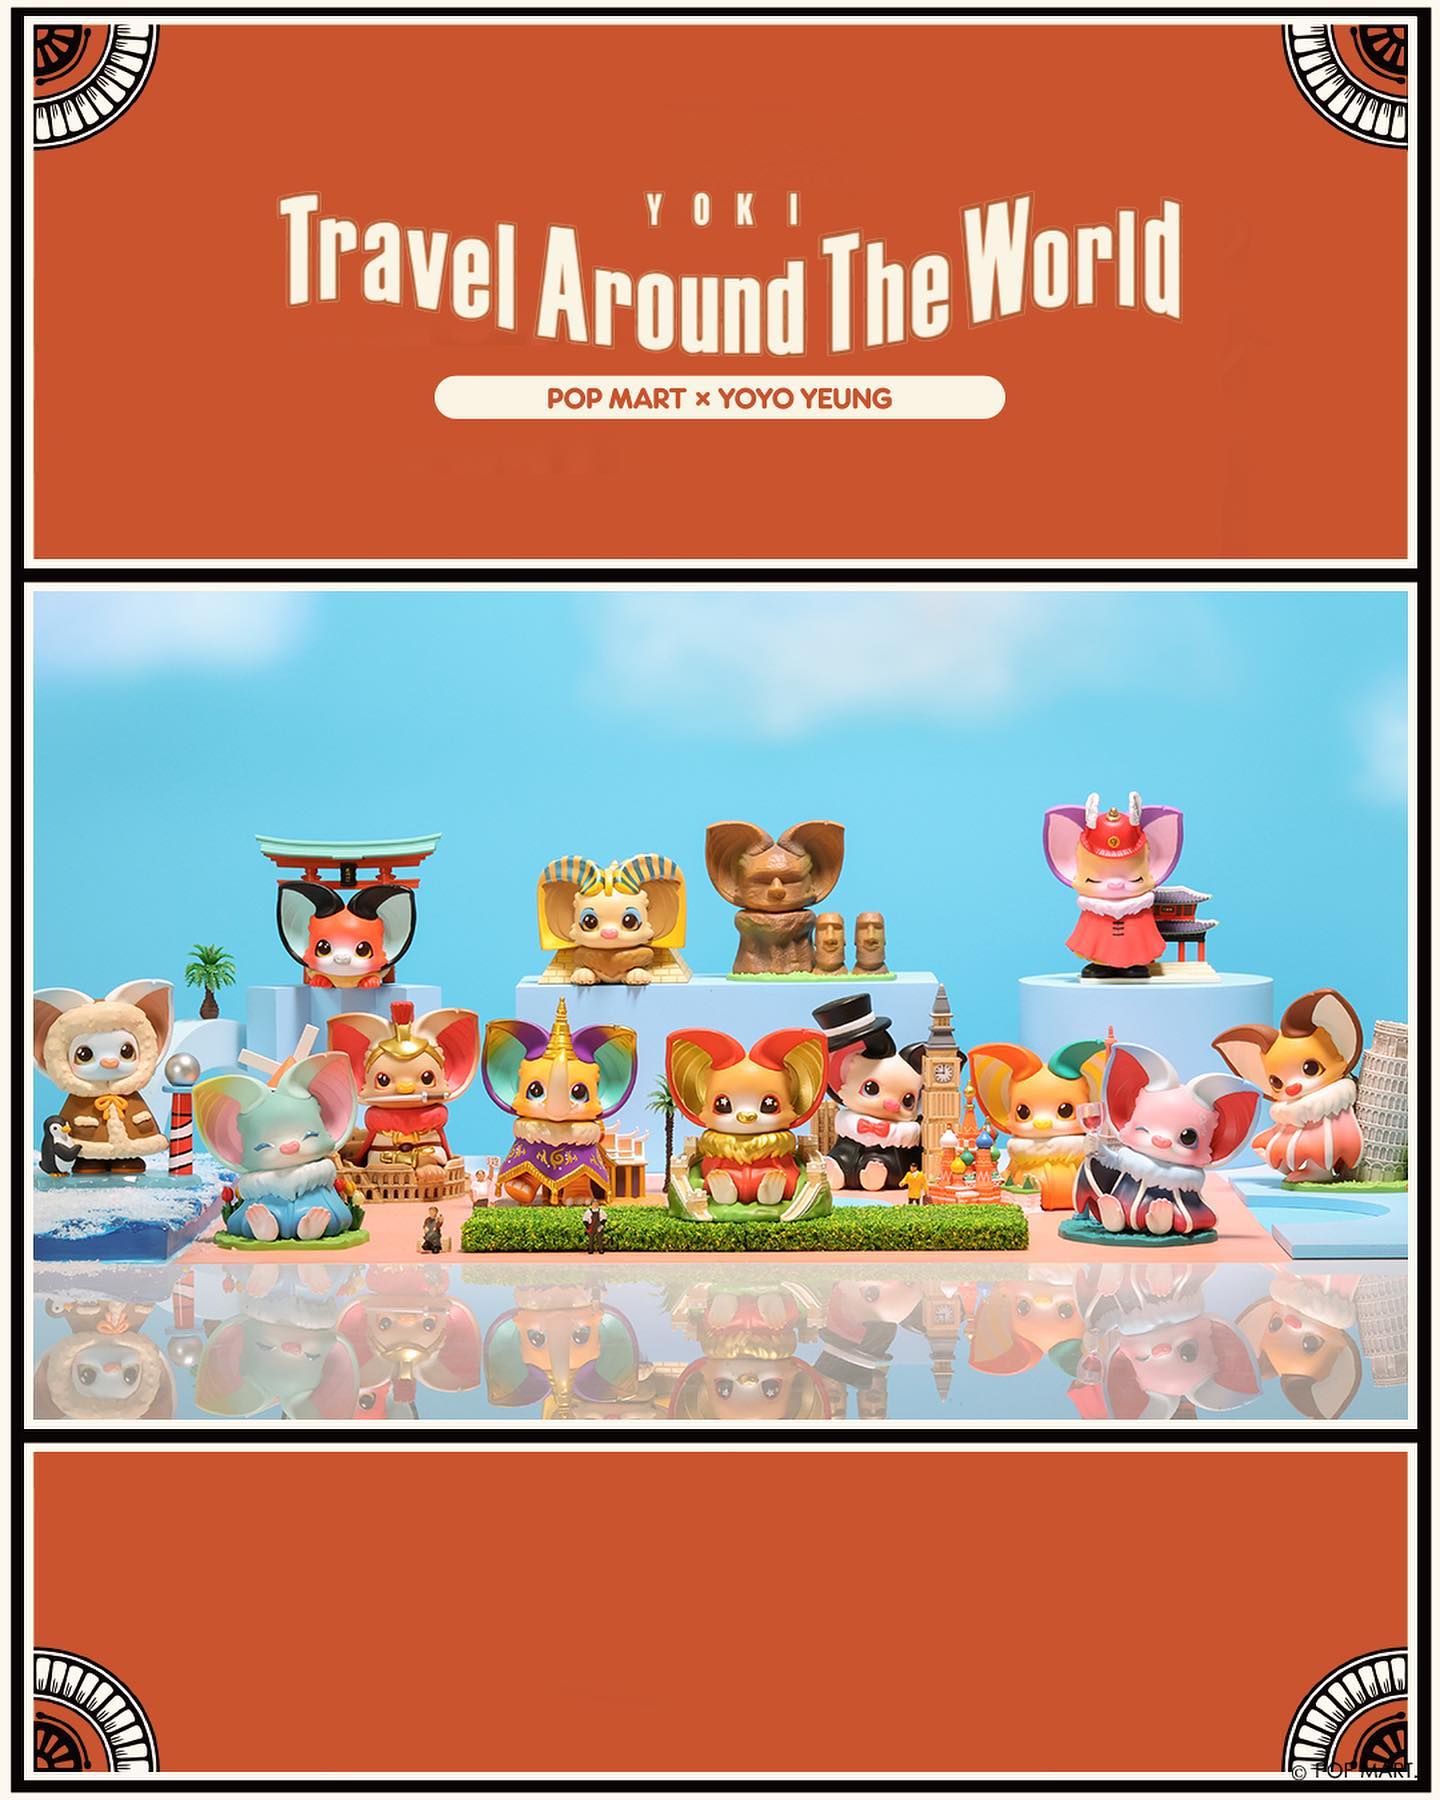 Yoki: Travel Around the World Blind Box Series